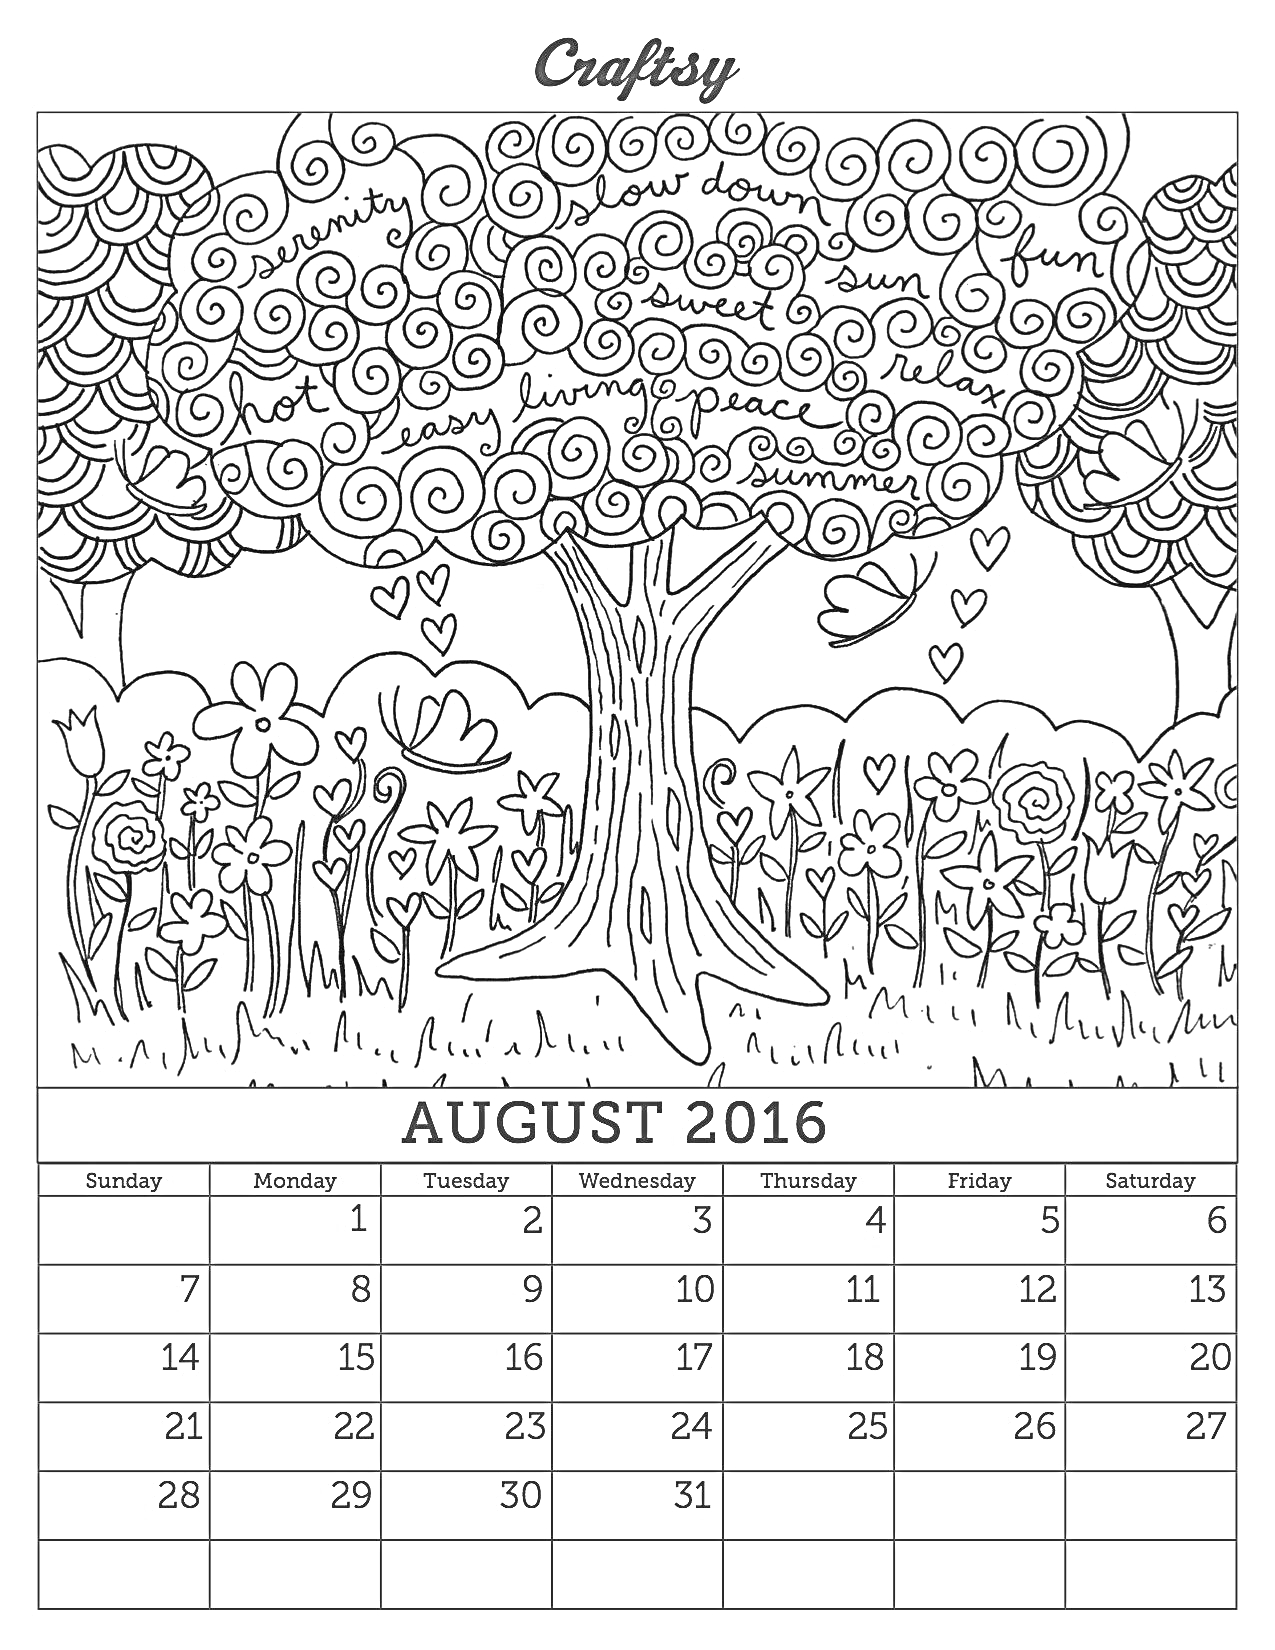 Раскраска календарь-раскраска, большое дерево с облаками, травы и цветы, узоры, сердечки, надписи на листьях